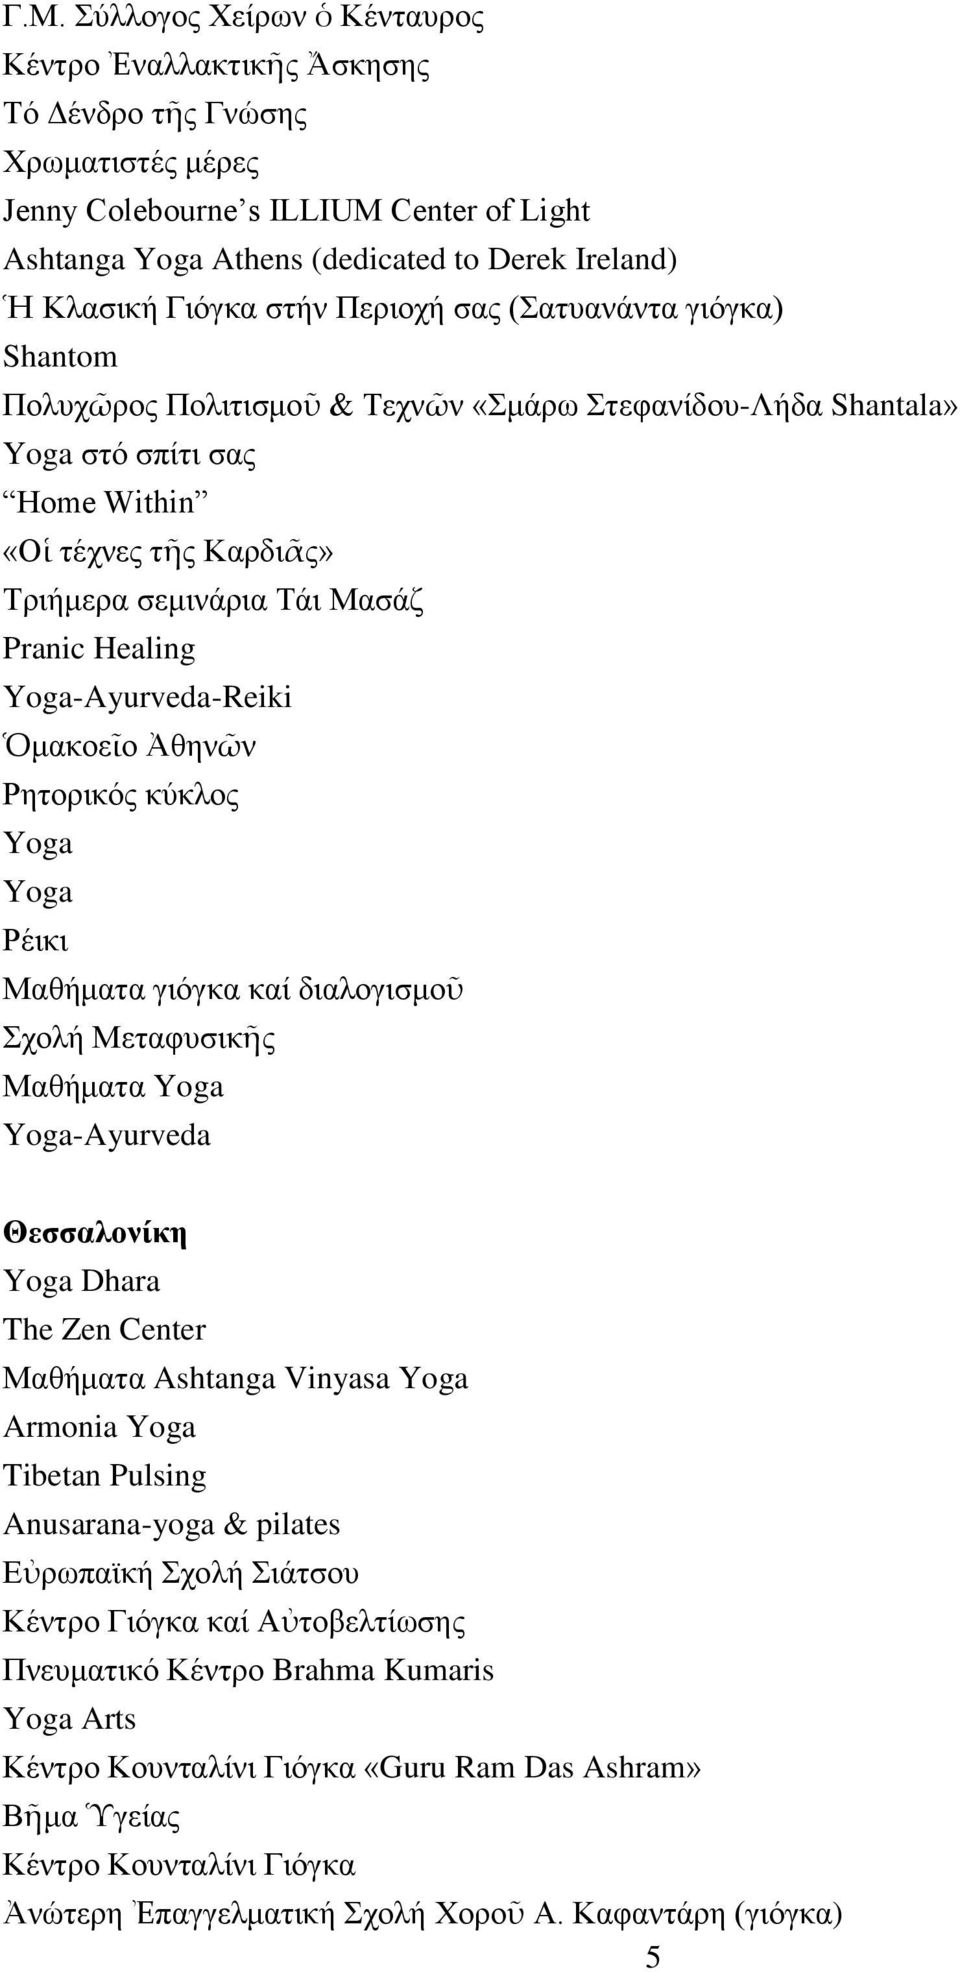 Μαζάδ Pranic Healing Yoga-Ayurveda-Reiki Ὁκαθνεῖν Ἀζελῶλ Ρεηνξηθόο θύθινο Yoga Yoga Ρέηθη Μαζήκαηα γηόγθα θαί δηαινγηζκνῦ ρνιή Μεηαθπζηθῆο Μαζήκαηα Yoga Yoga-Ayurveda Θεζζαλονίκη Yoga Dhara The Zen